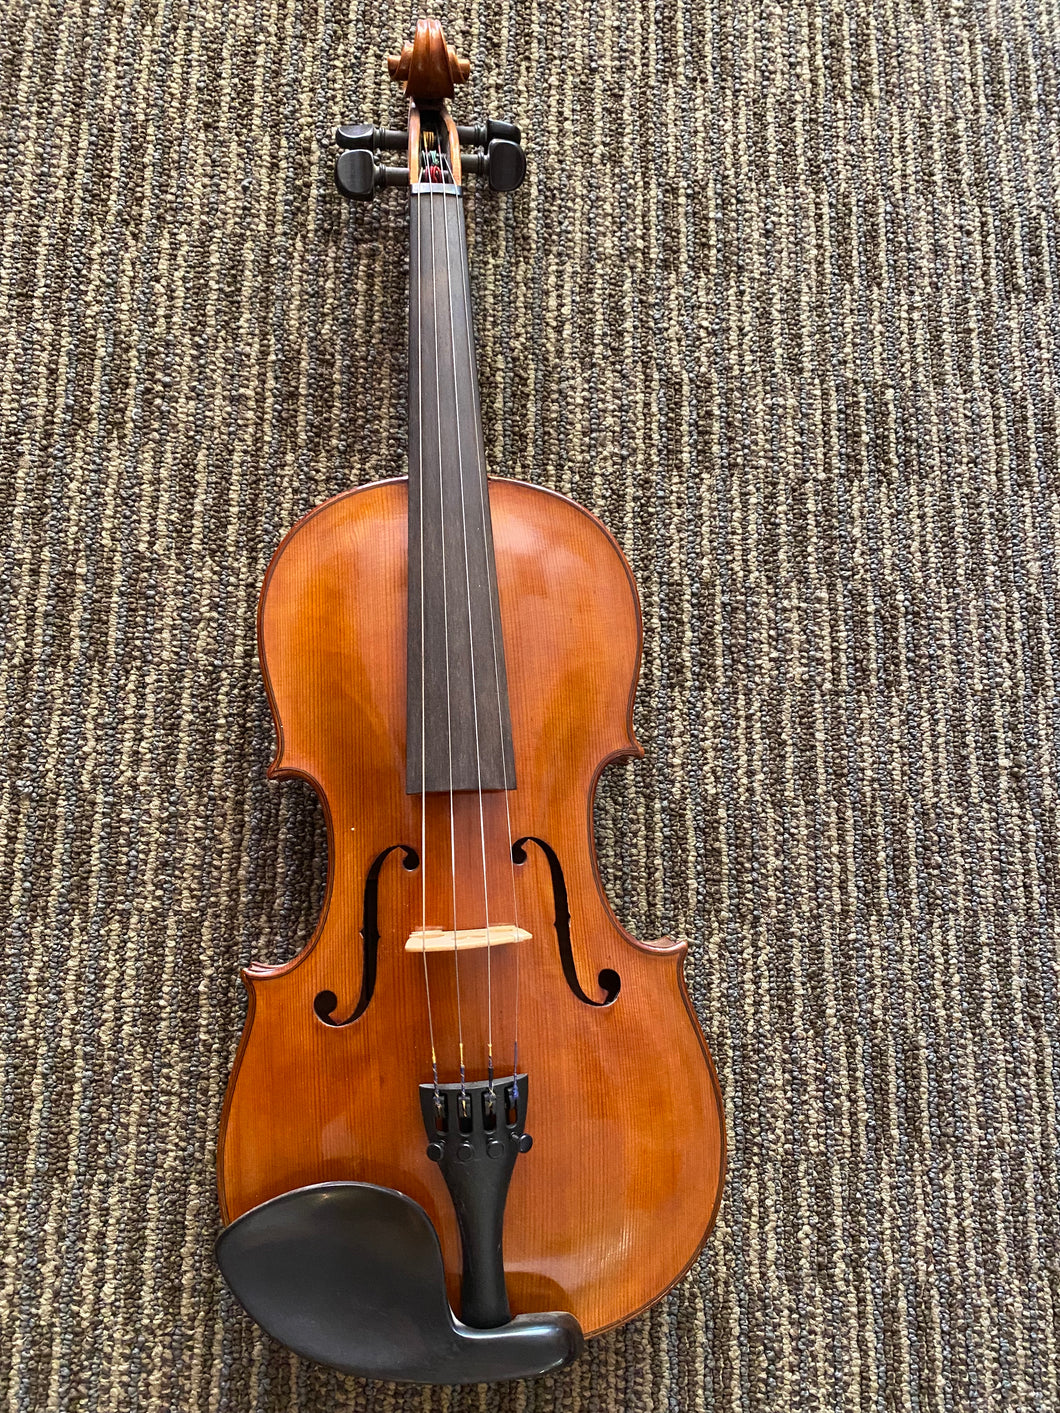 Giancarlo Santangelo Parma Violin c. 1951